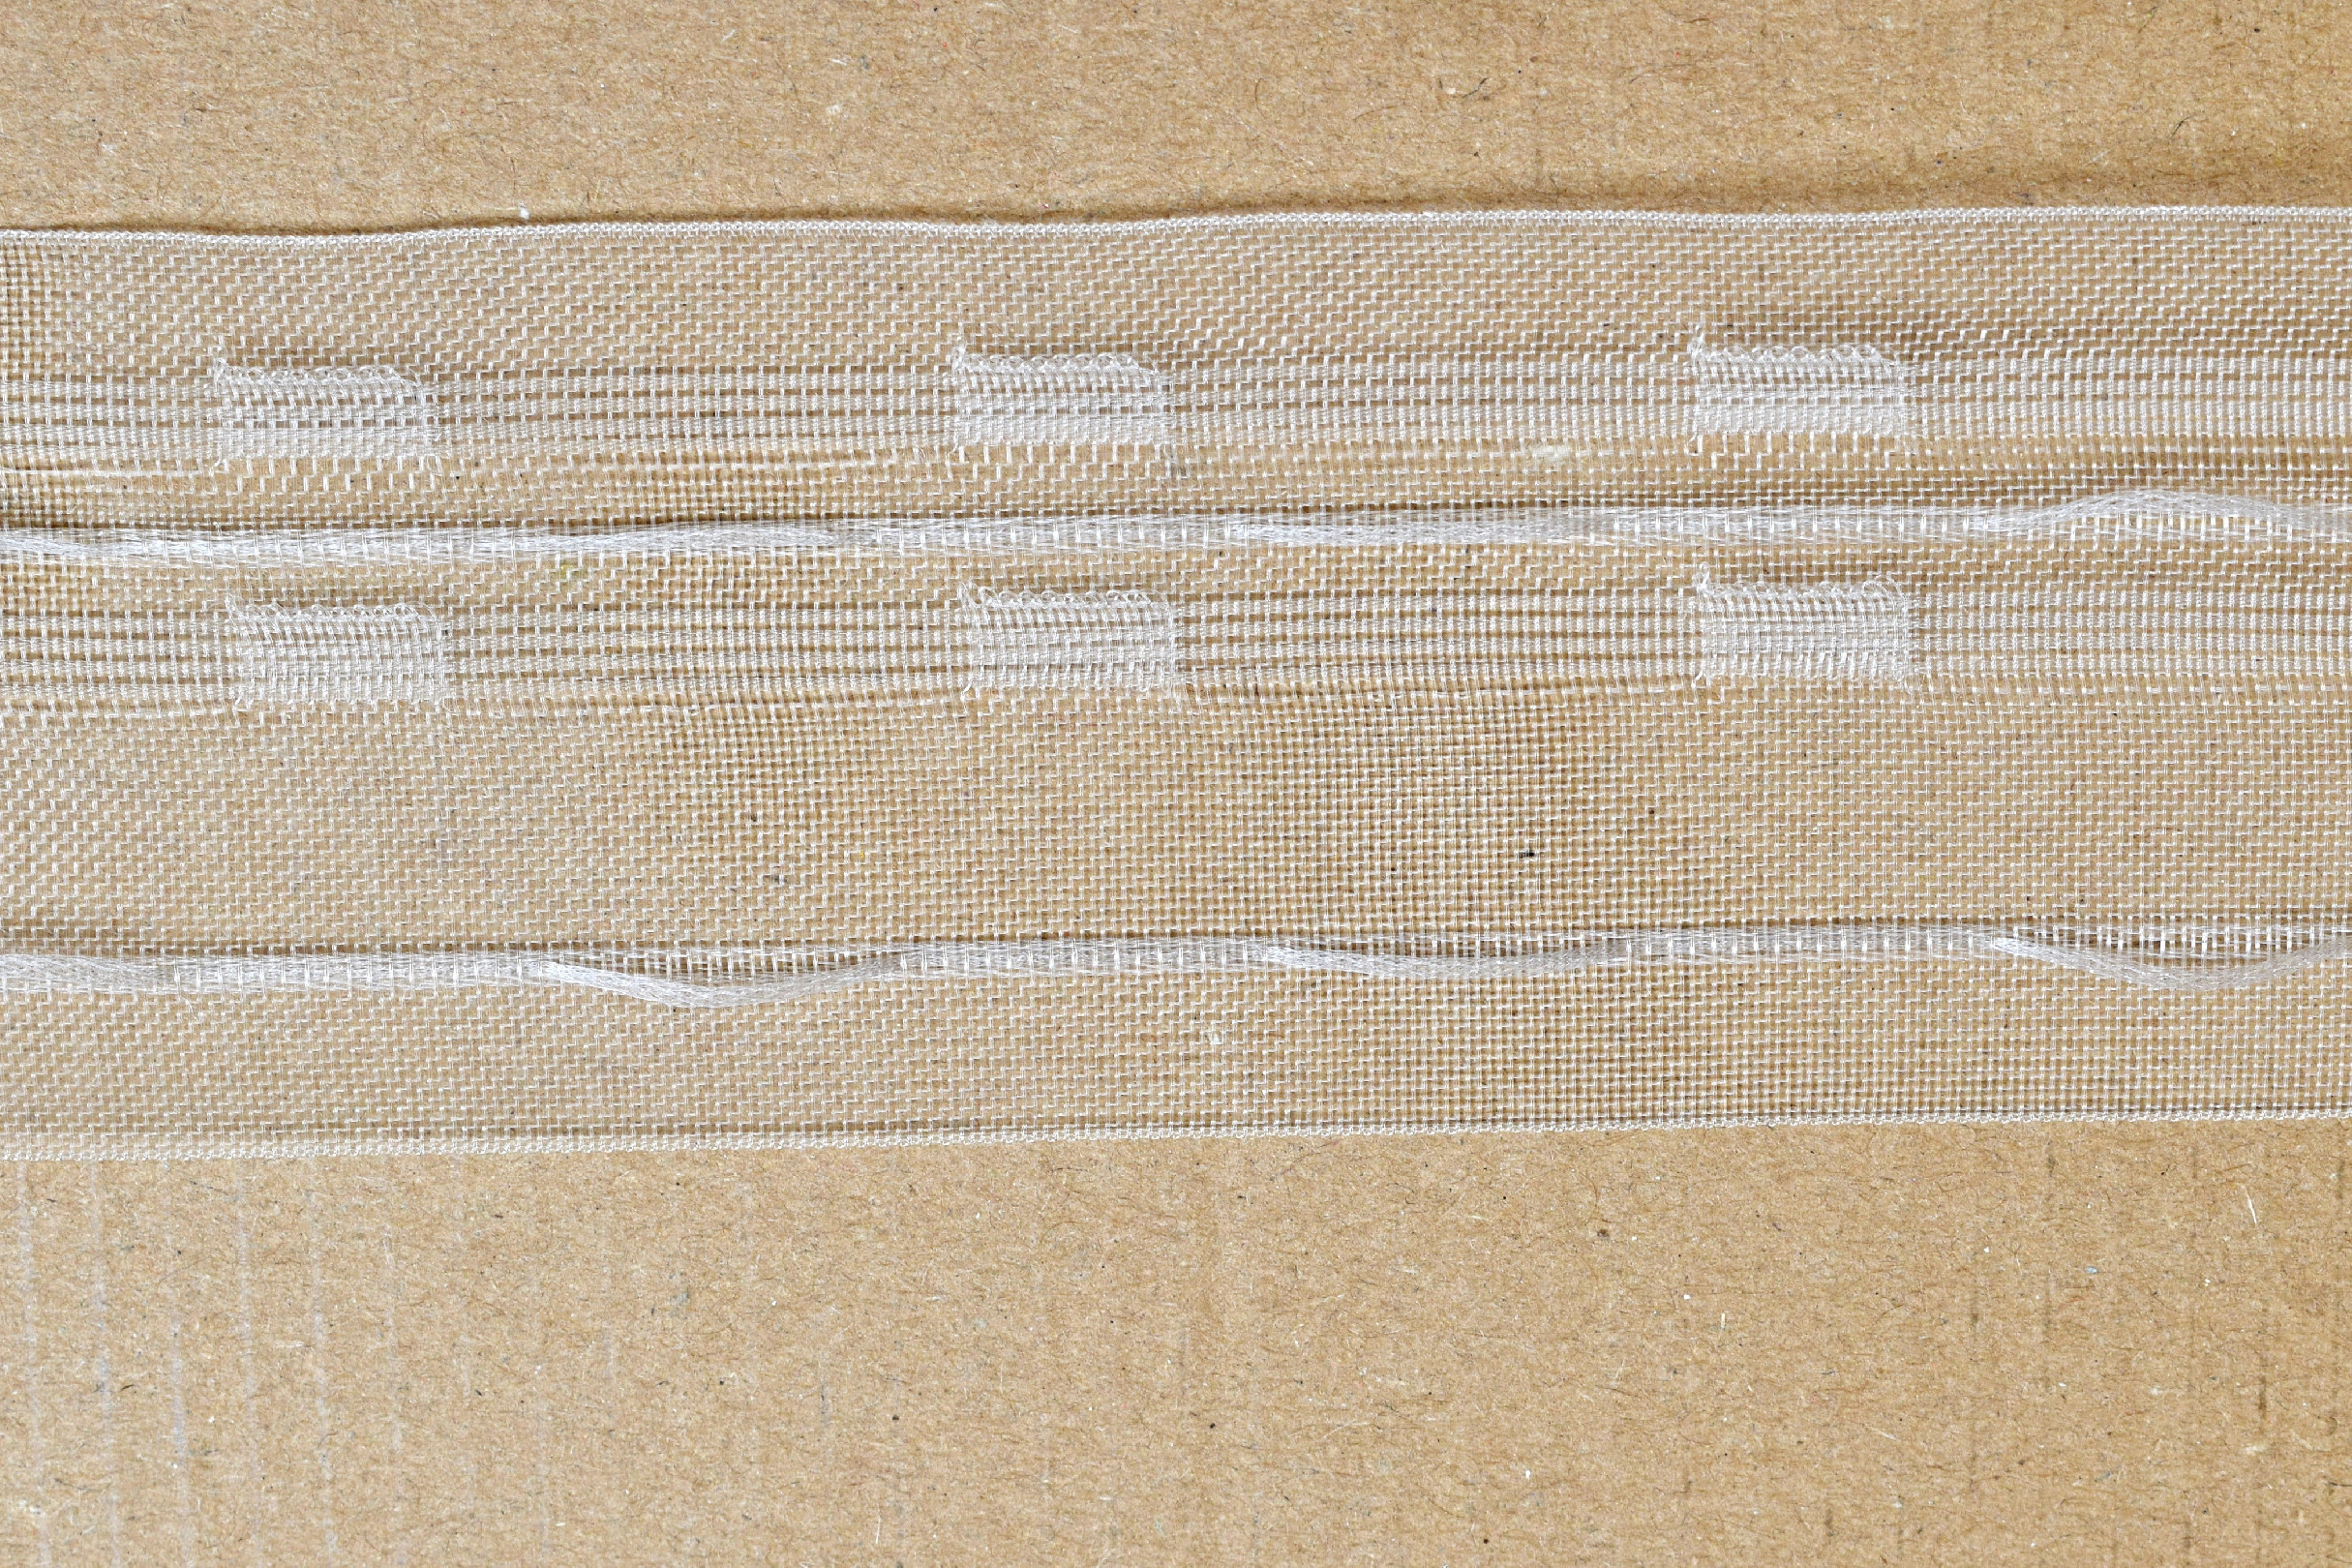 Záclonovka - tužkové řasení, transparentní, 50 mm